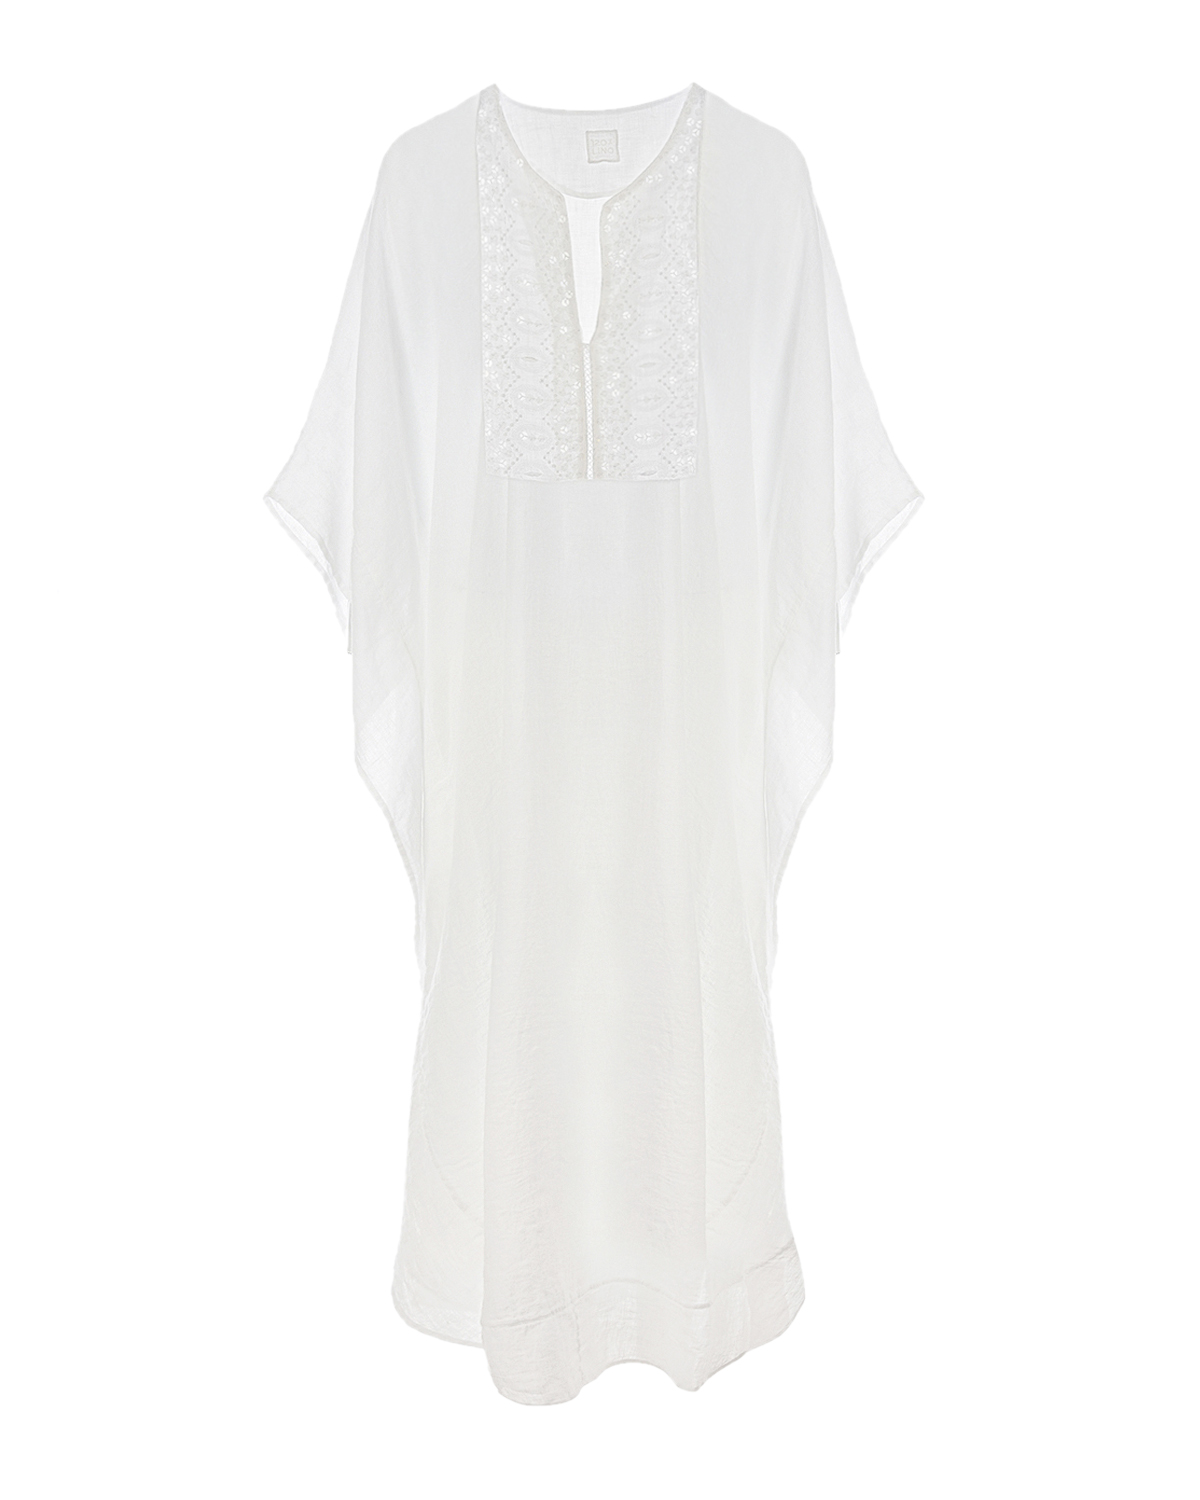 Белое платье с вышивкой пайетками 120% Lino, размер 40, цвет белый - фото 1